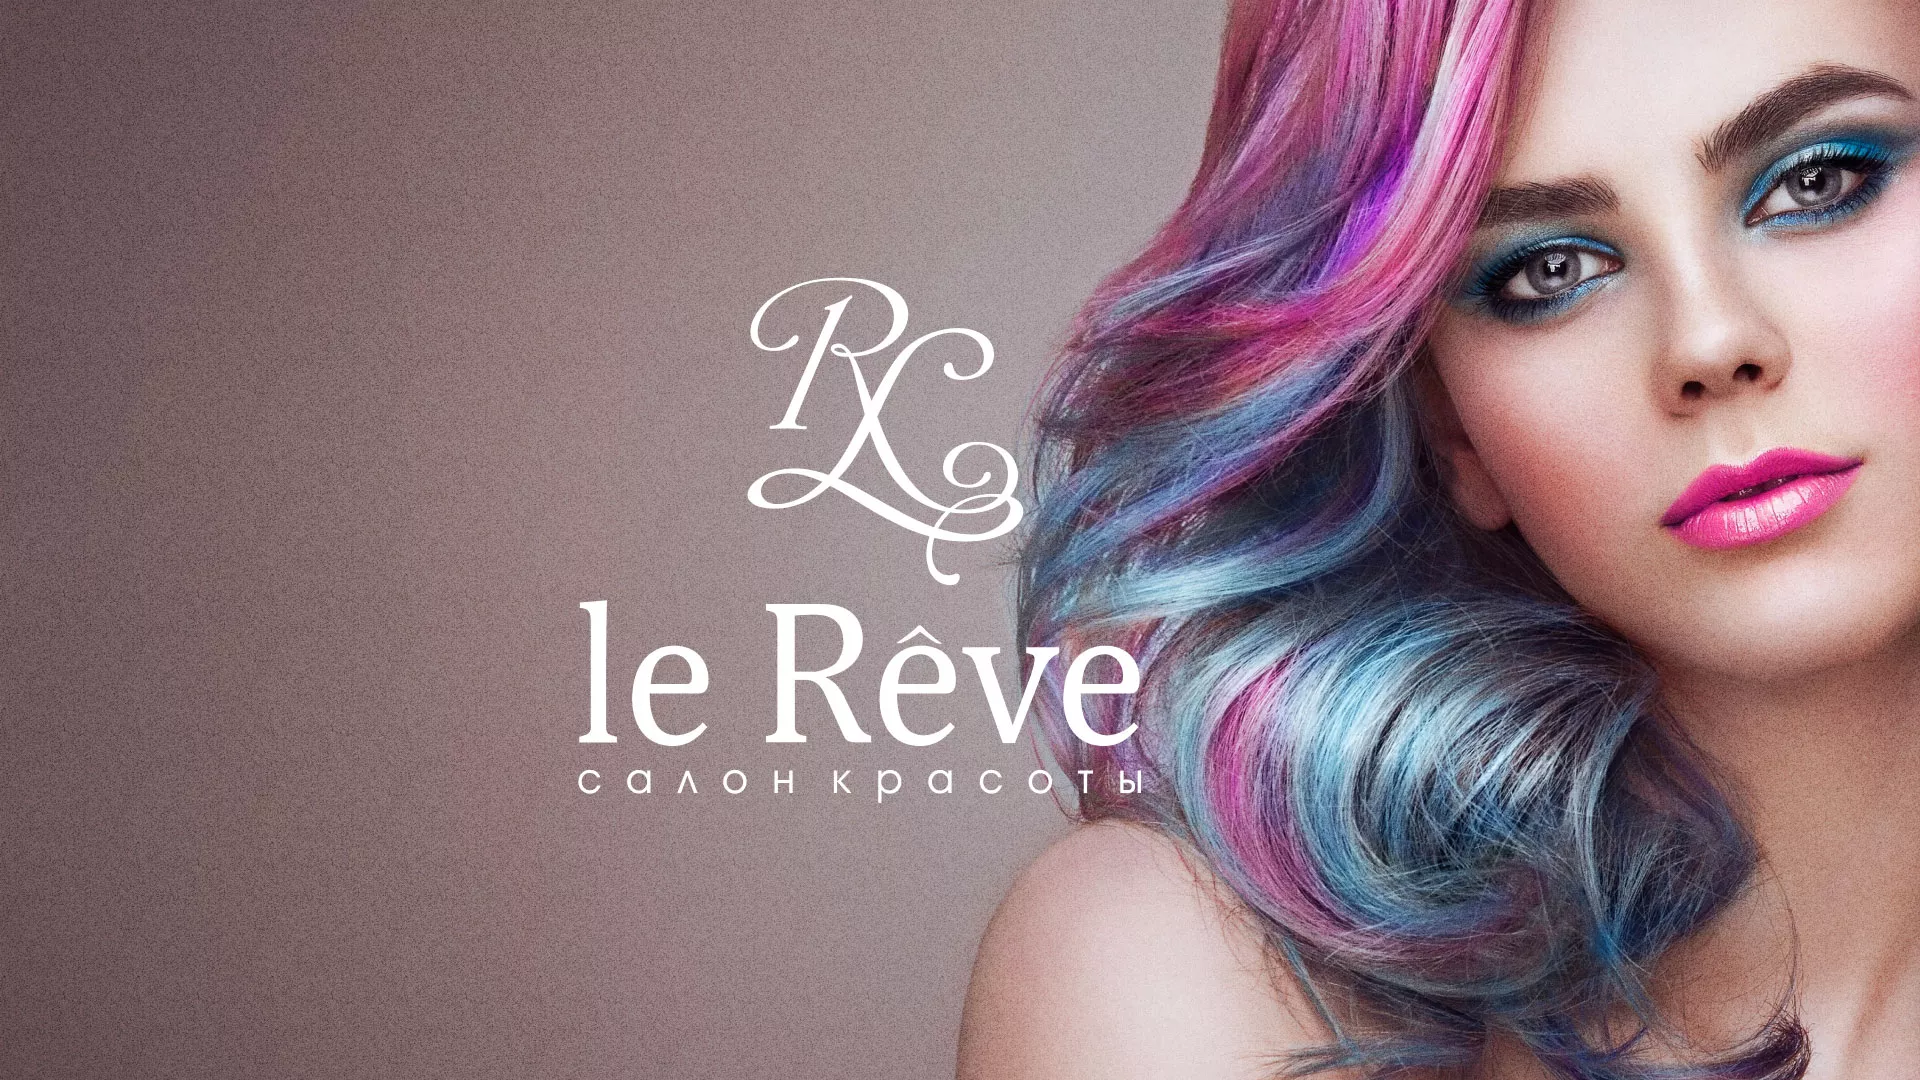 Создание сайта для салона красоты «Le Reve» в Иркутске